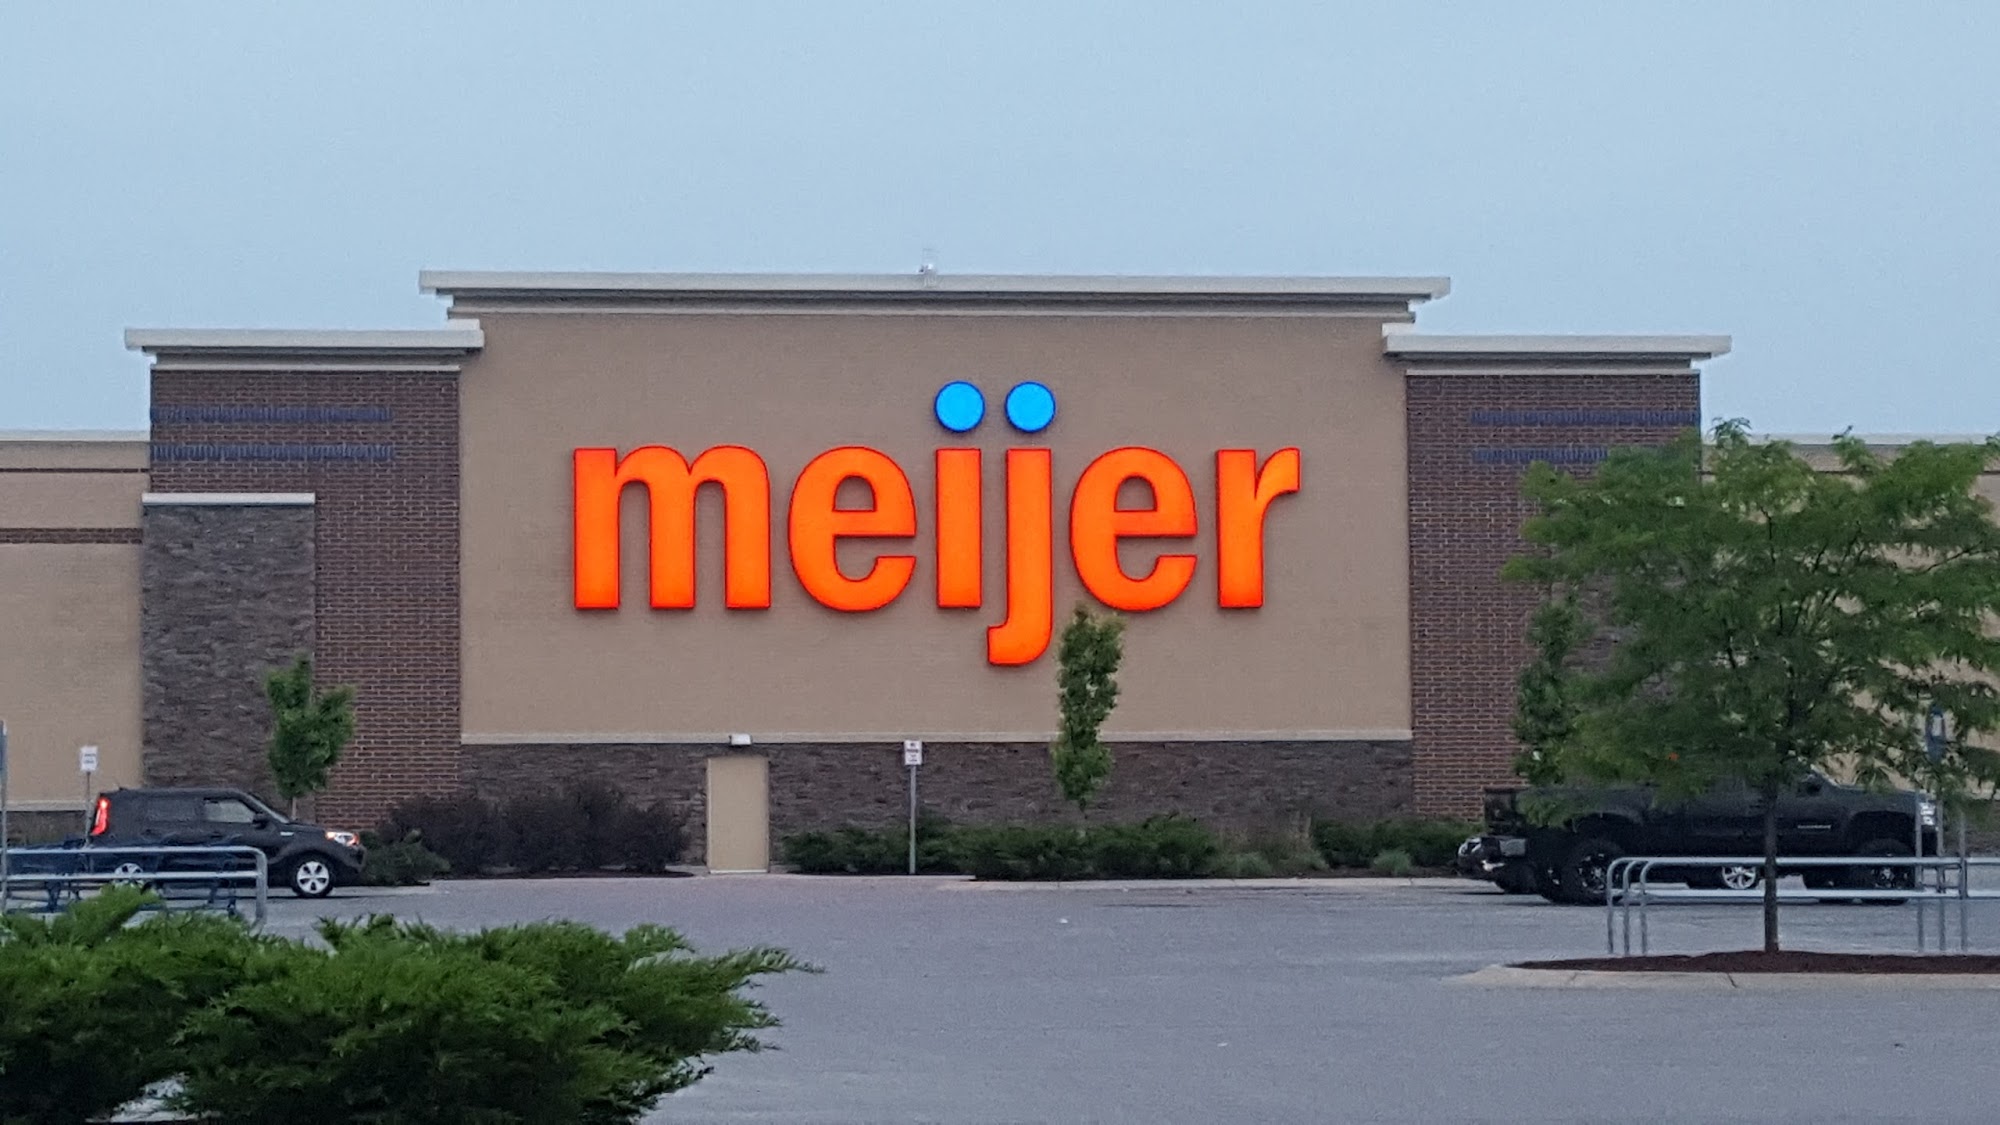 Meijer